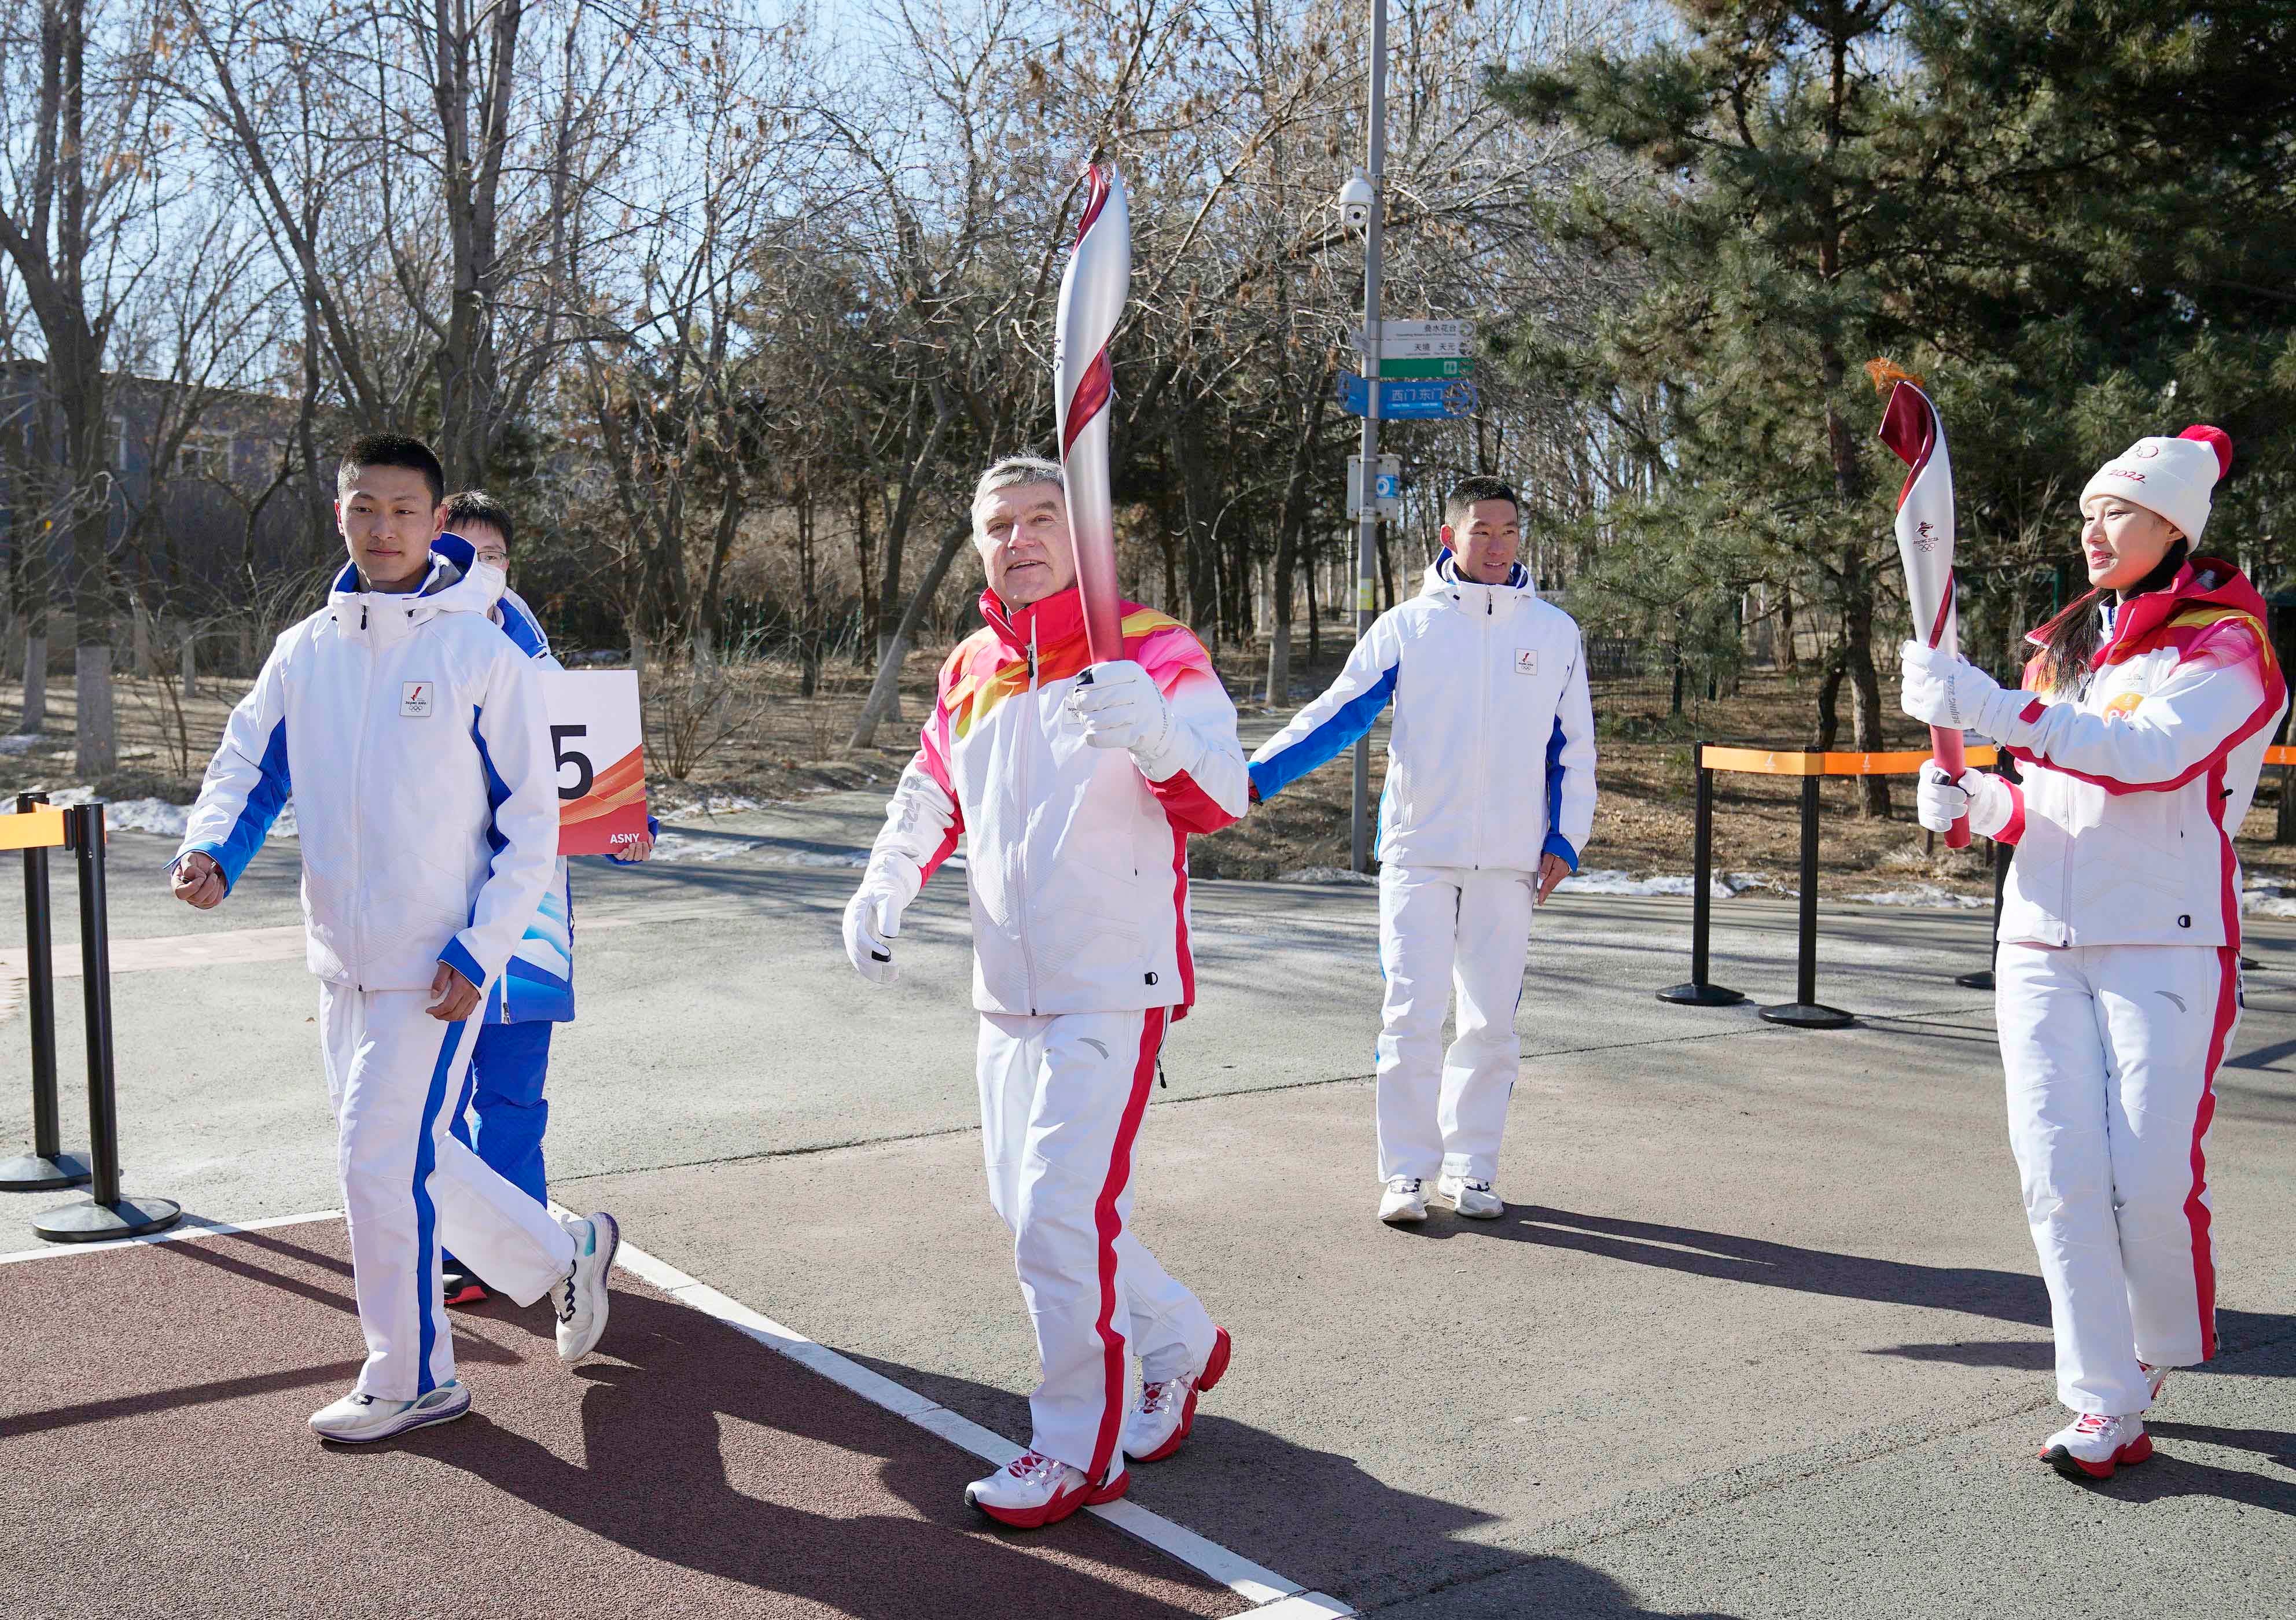 Le président du Comité international olympique Thomas Bach (en tenue blanche-rouge) participait à l’ultime phase du relais de la Flamme olympique à Pékin le 4 février 2022, peu avant la cérémonie d'ouverture des JO d’hiver 2022 accueillis par la Chine.